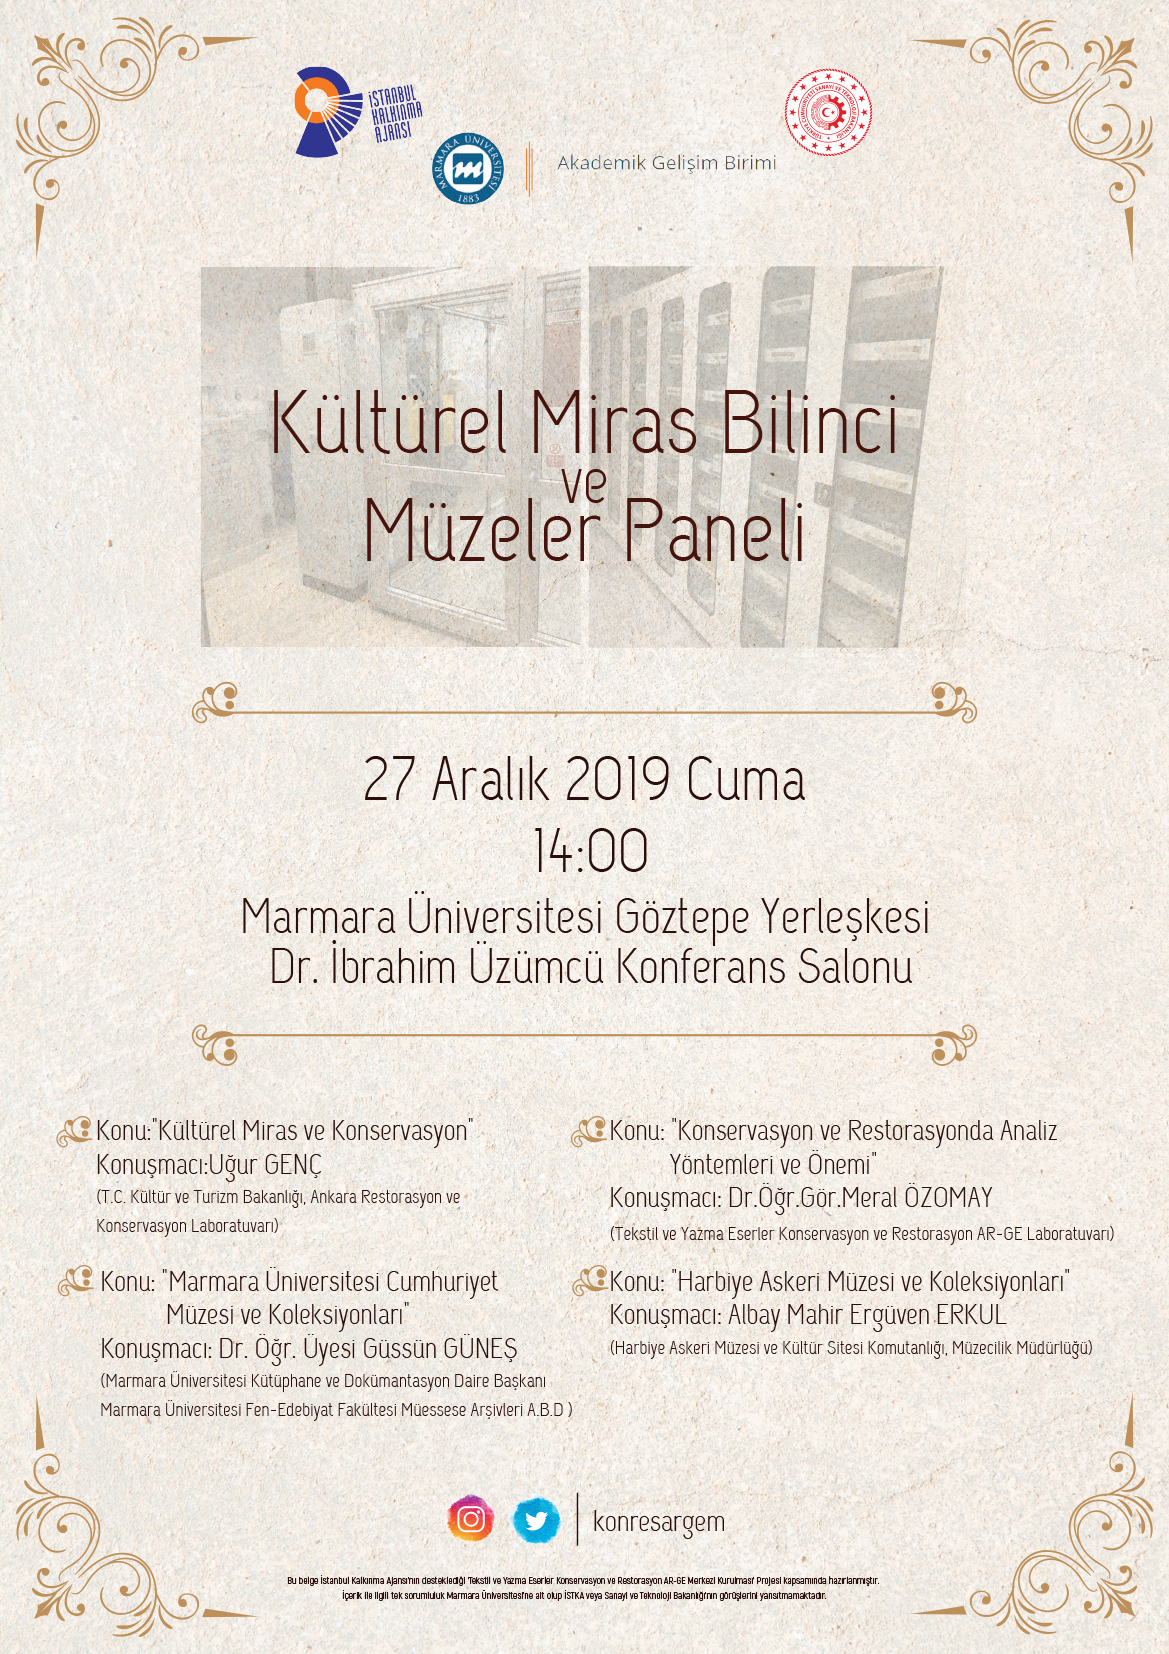 kültürel_miras_bilinci_müzeler_paneli_afis.jpg (2.18 MB)